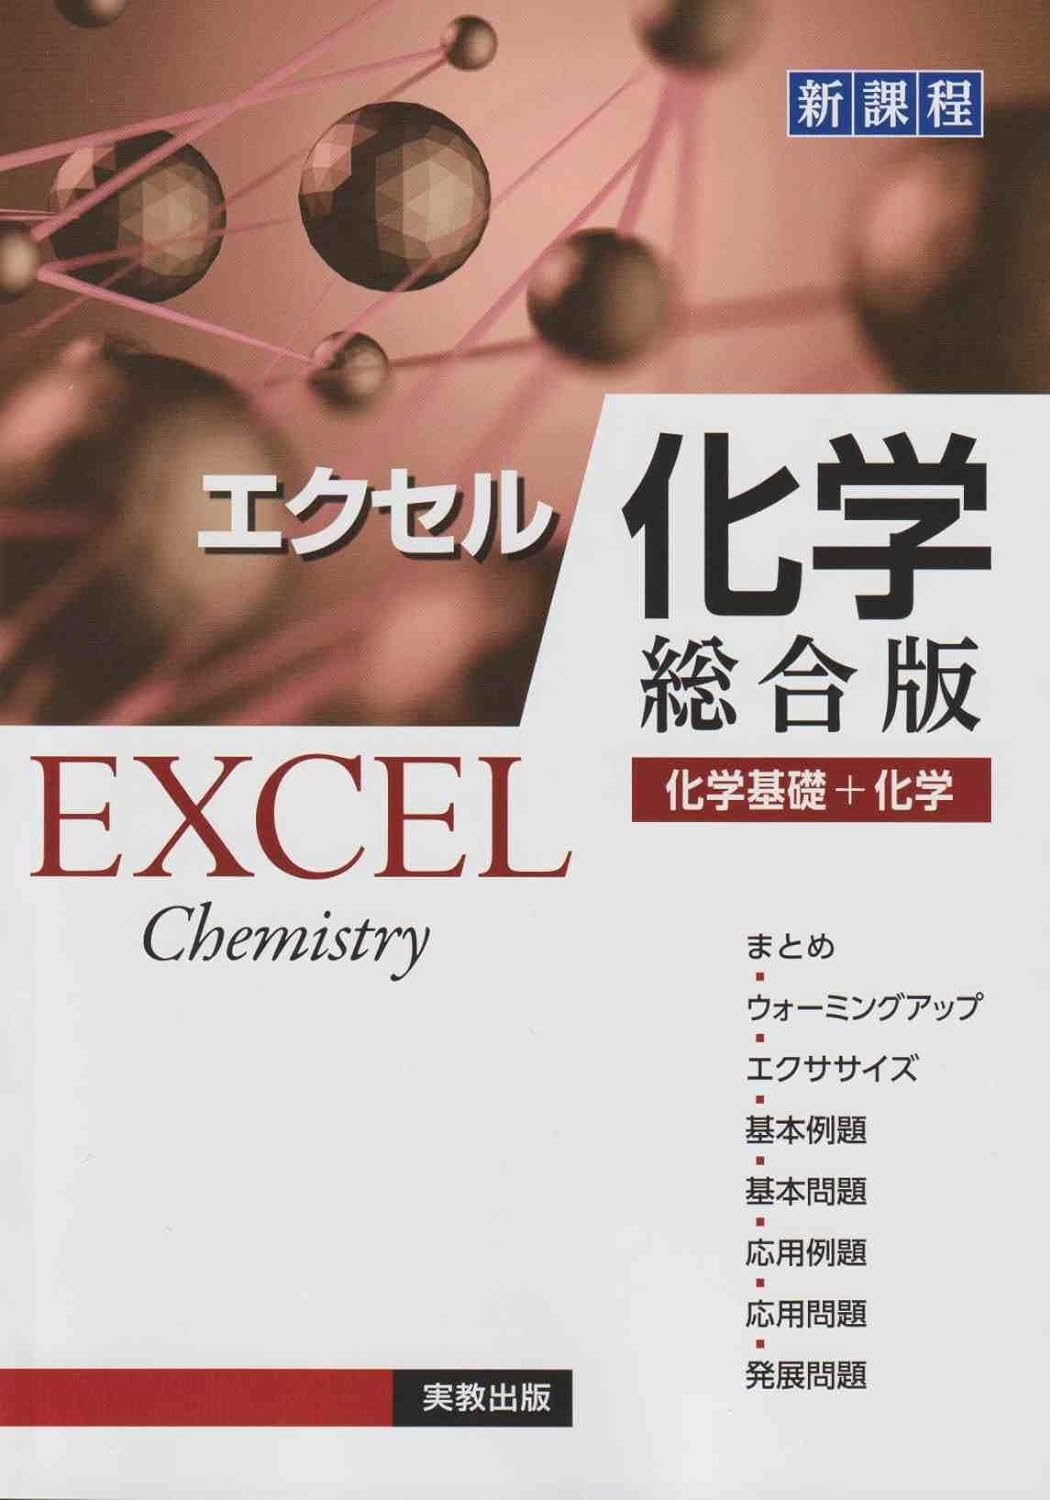 エクセル化學總合版: 化學基礎+化學[新課程]